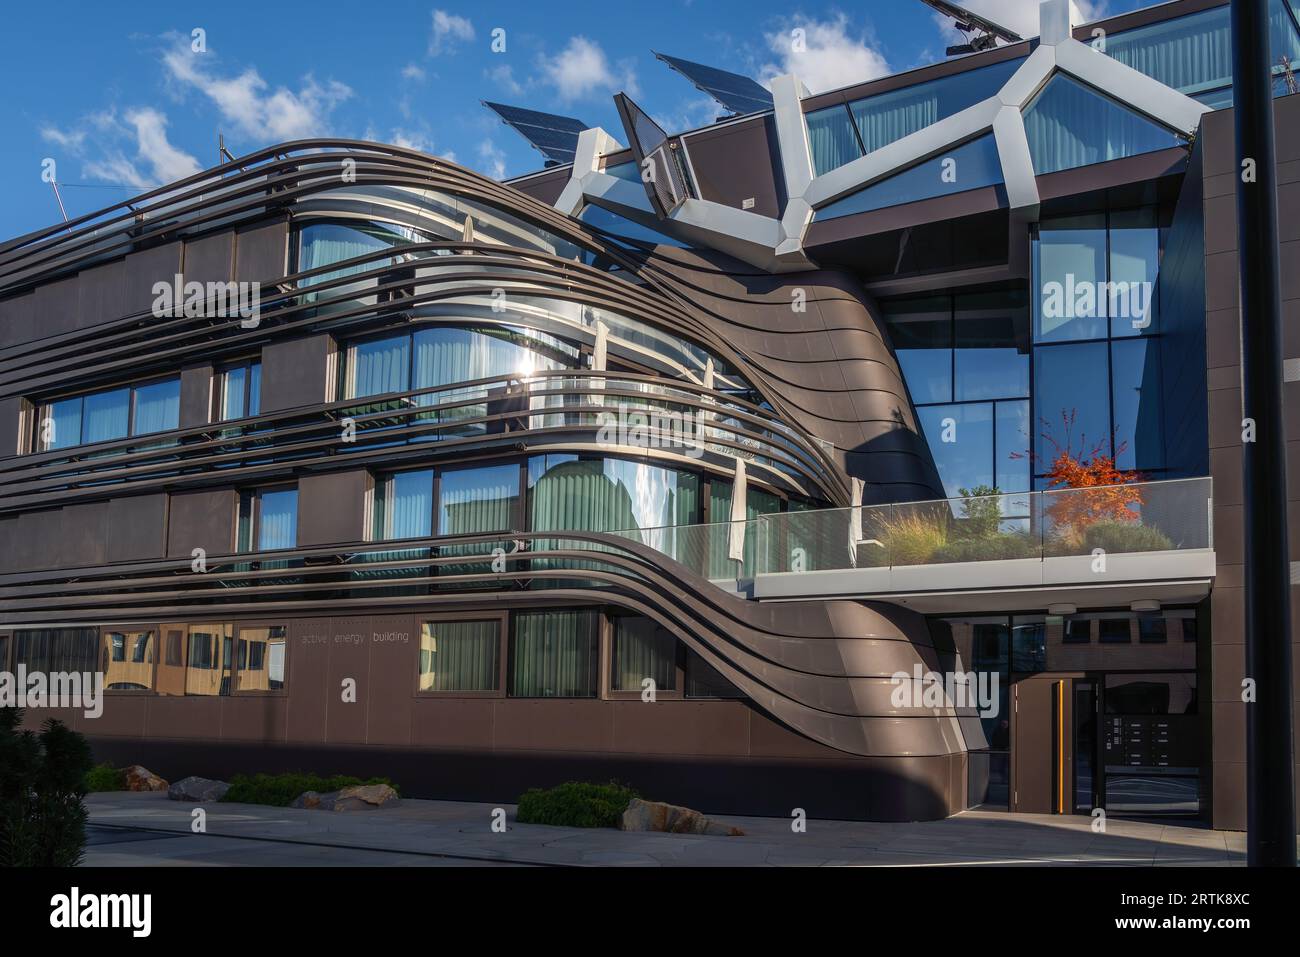 Edilizia energetica attiva - architettura sostenibile - Vaduz, Liechtenstein Foto Stock